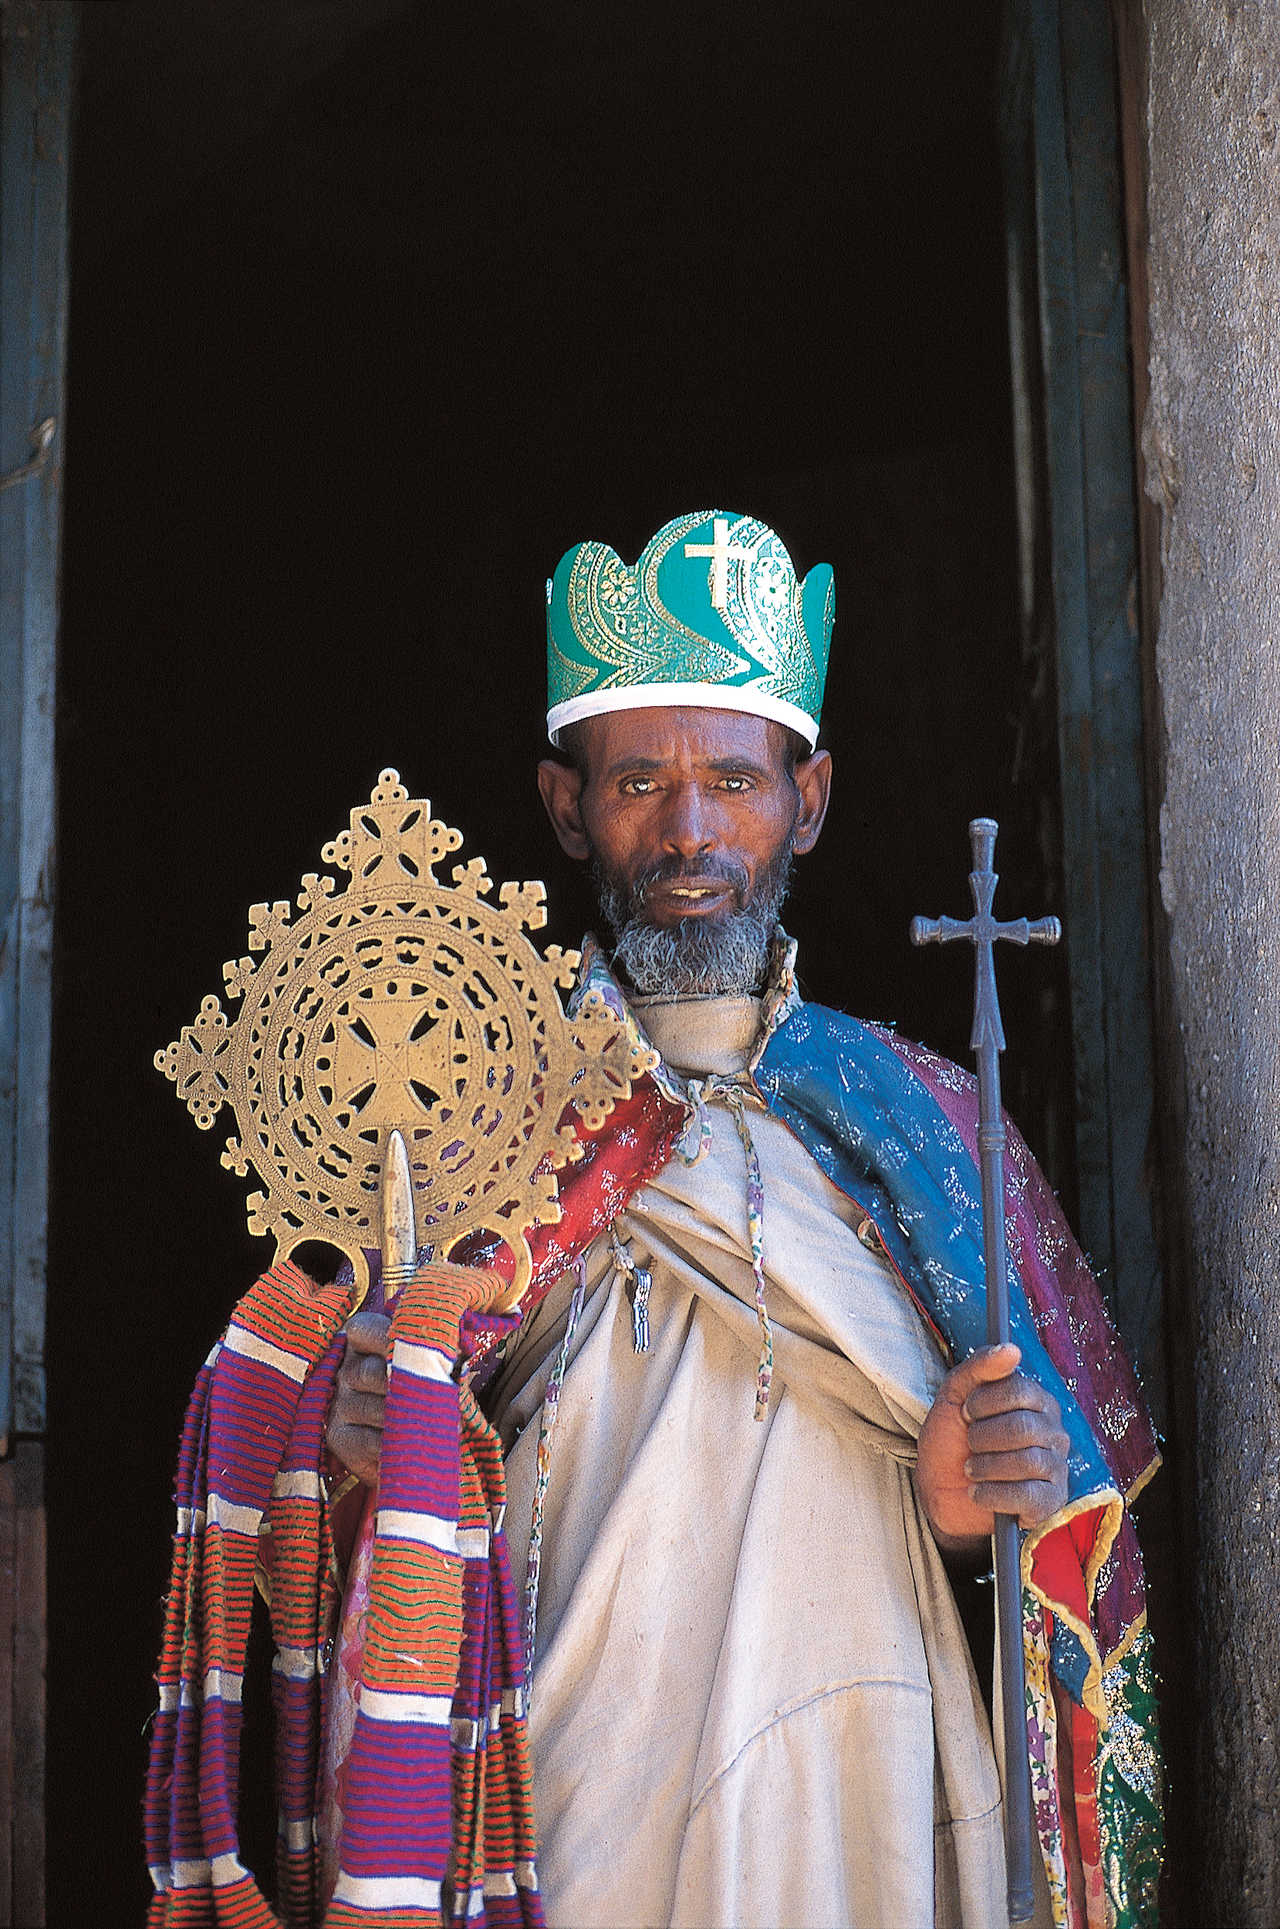 Image Route historique, Harar et fêtes éthiopiennes